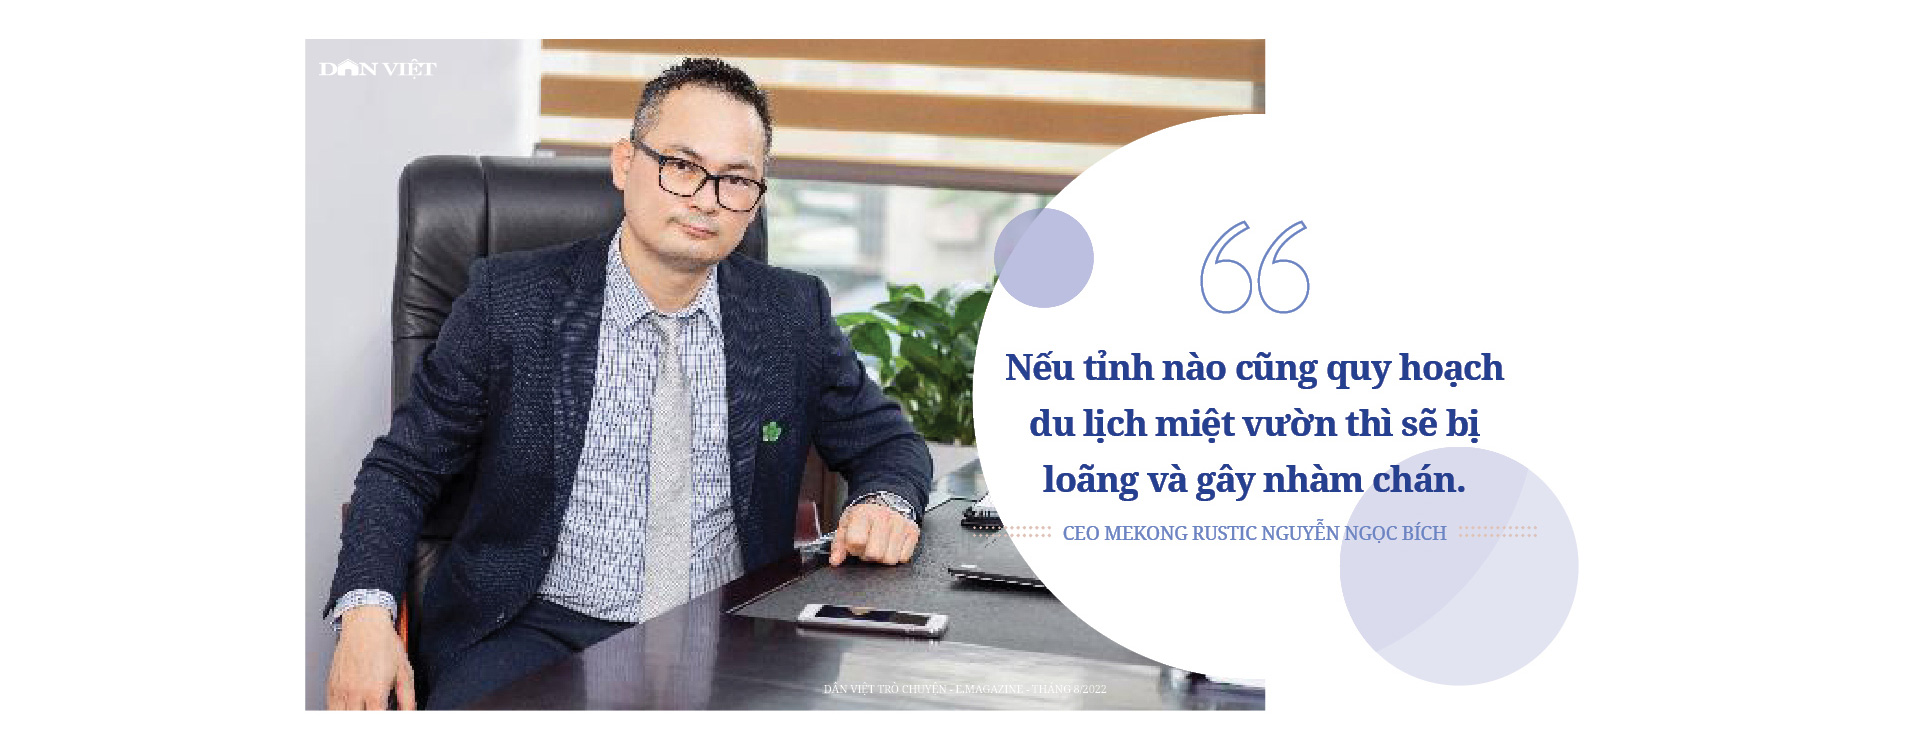 Tổng giám đốc Mekong Rustic Nguyễn Ngọc Bích: Du lịch nông nghiệp ở Việt Nam - đầy tiềm năng nhưng hiện vẫn mờ nhạt - Ảnh 9.